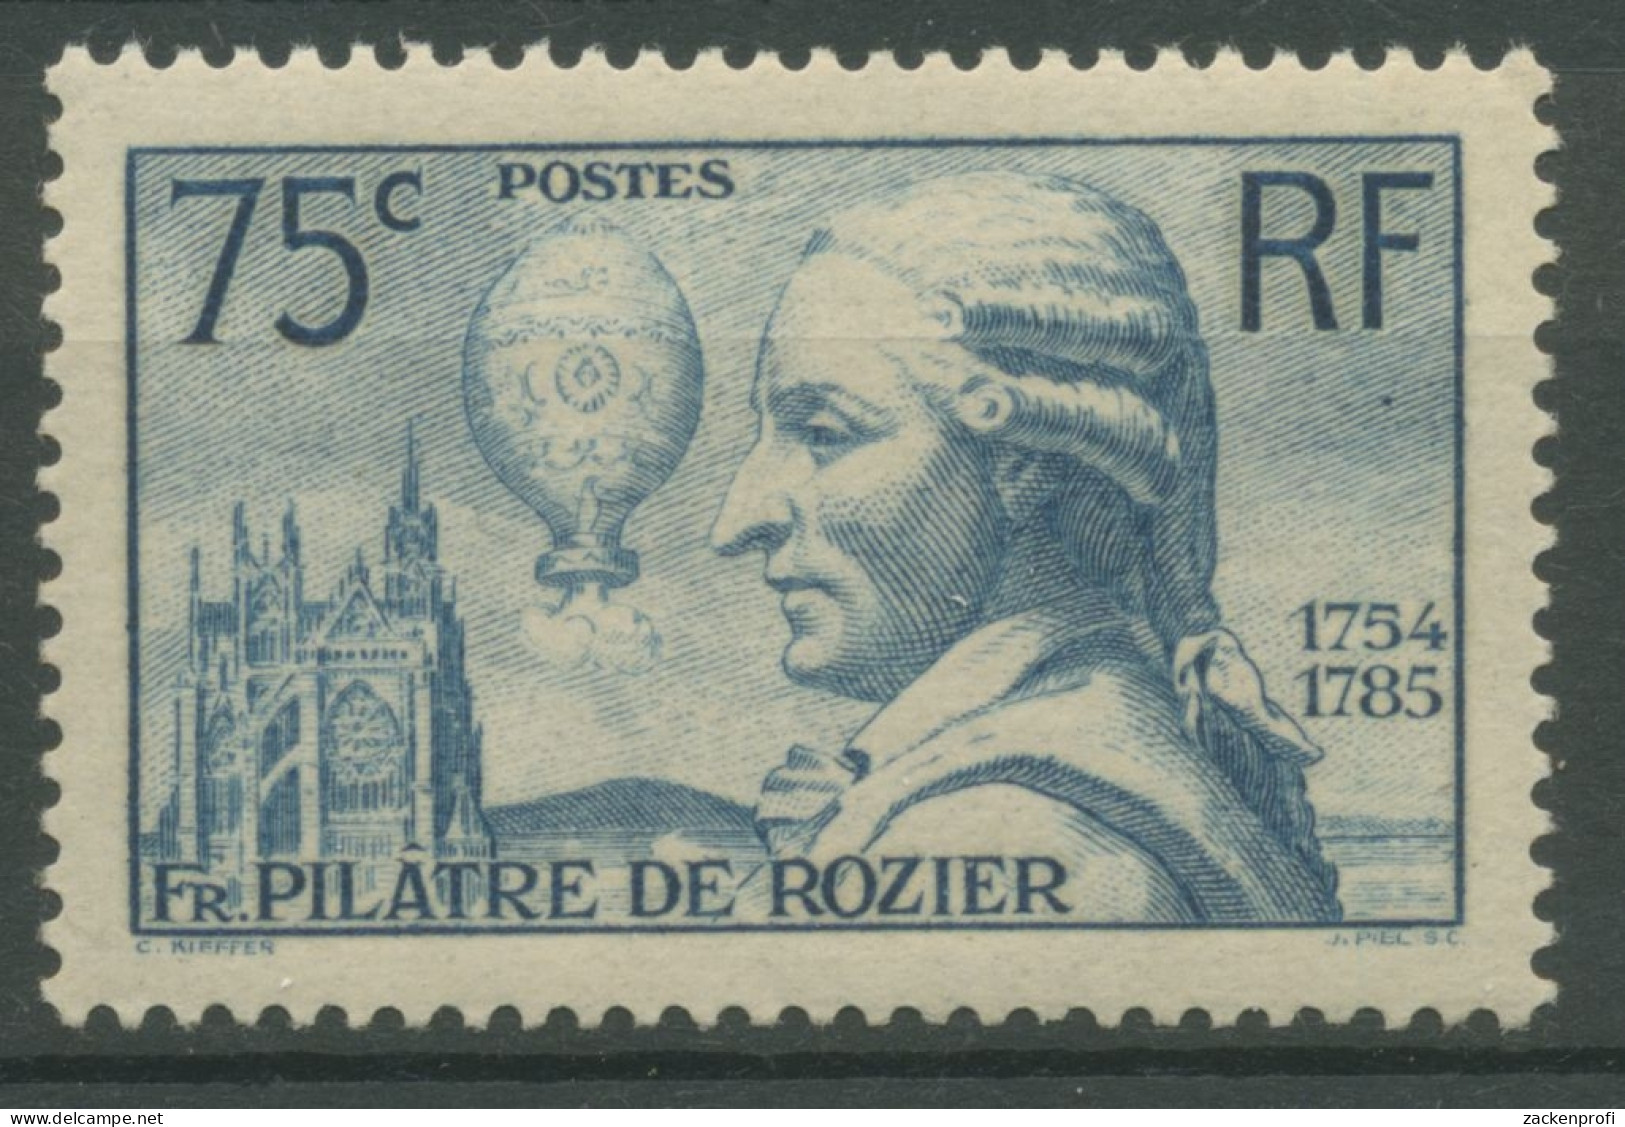 Frankreich 1936 Physiker Und Ballonfahrer De Rozier 318 Mit Falz - Unused Stamps